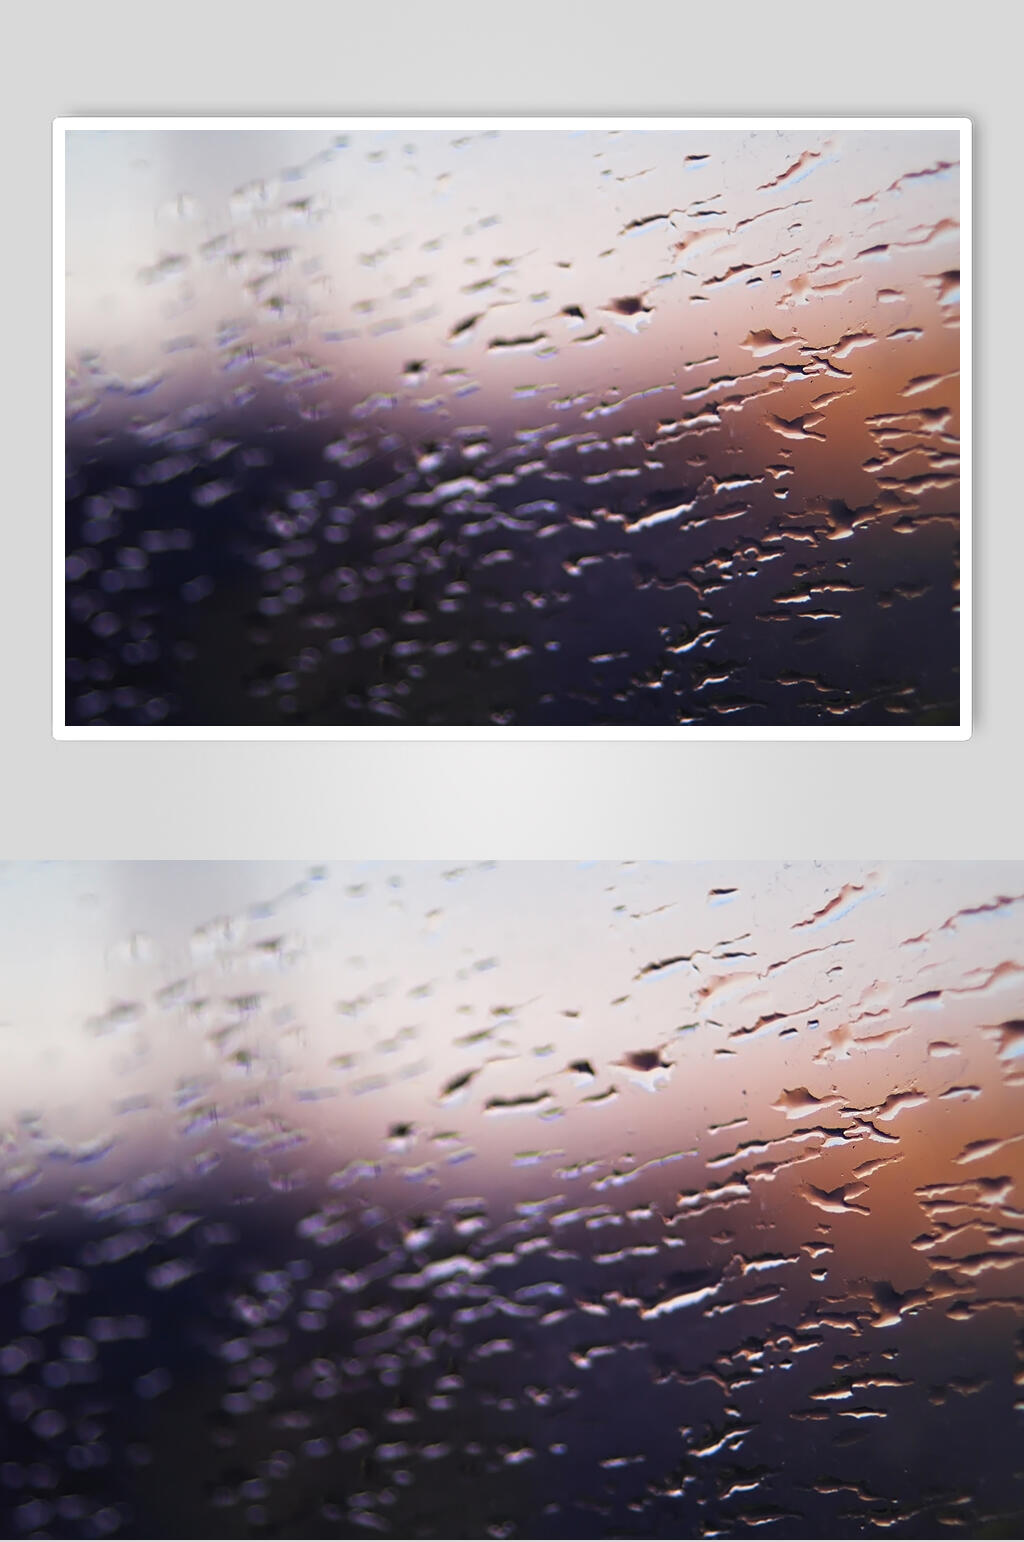 模糊透明水珠雨滴摄影元素图片